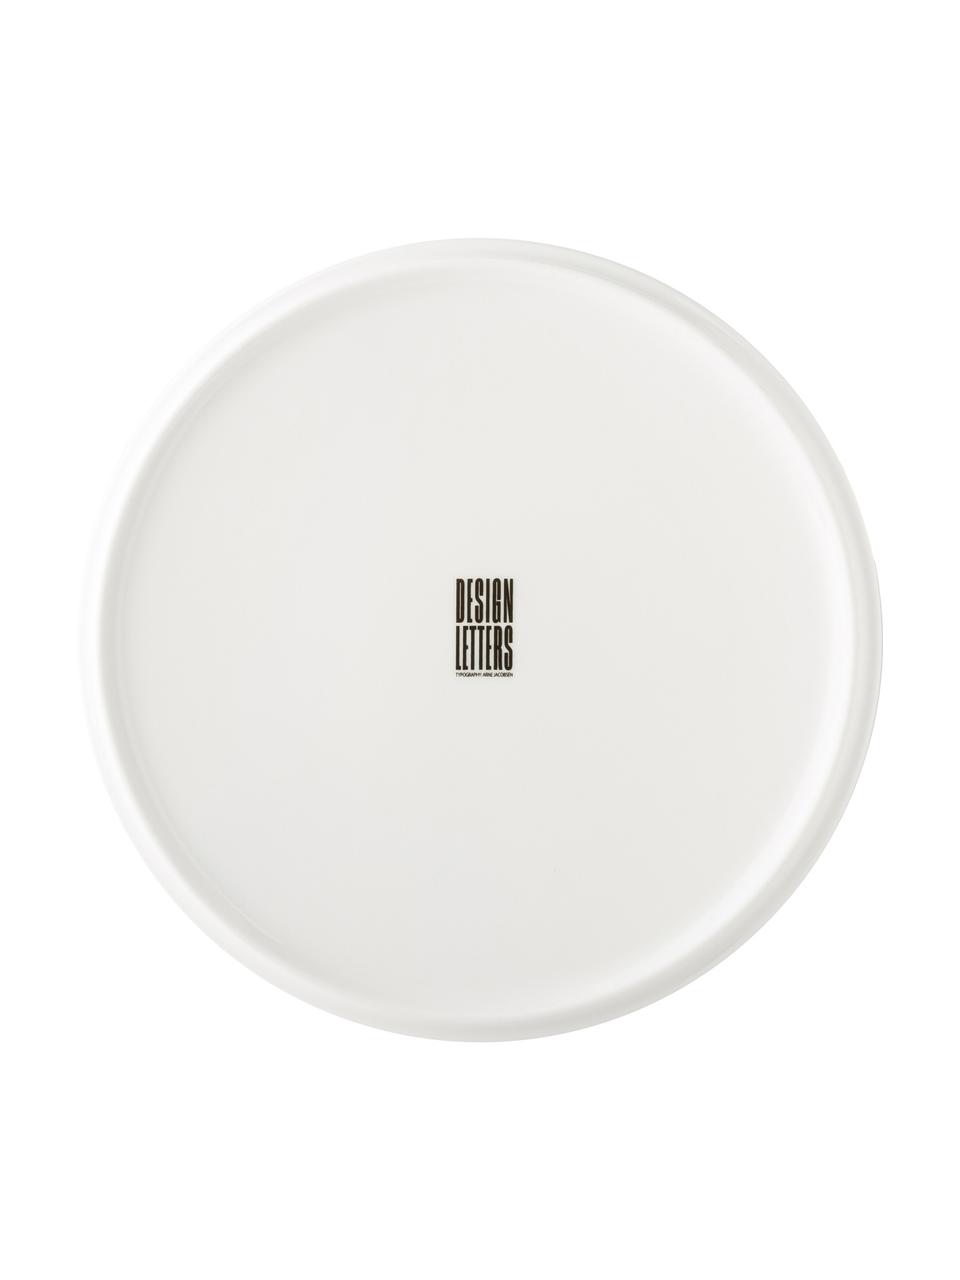 Designový snídaňový talíř s písmenem Personal (varianty od A do Z), Kostní porcelán Fine Bone China
Fine Bone China je měkký porcelán, který se vyznačuje zejména svým zářivým a průsvitným leskem, Bílá, černá, Talíř W